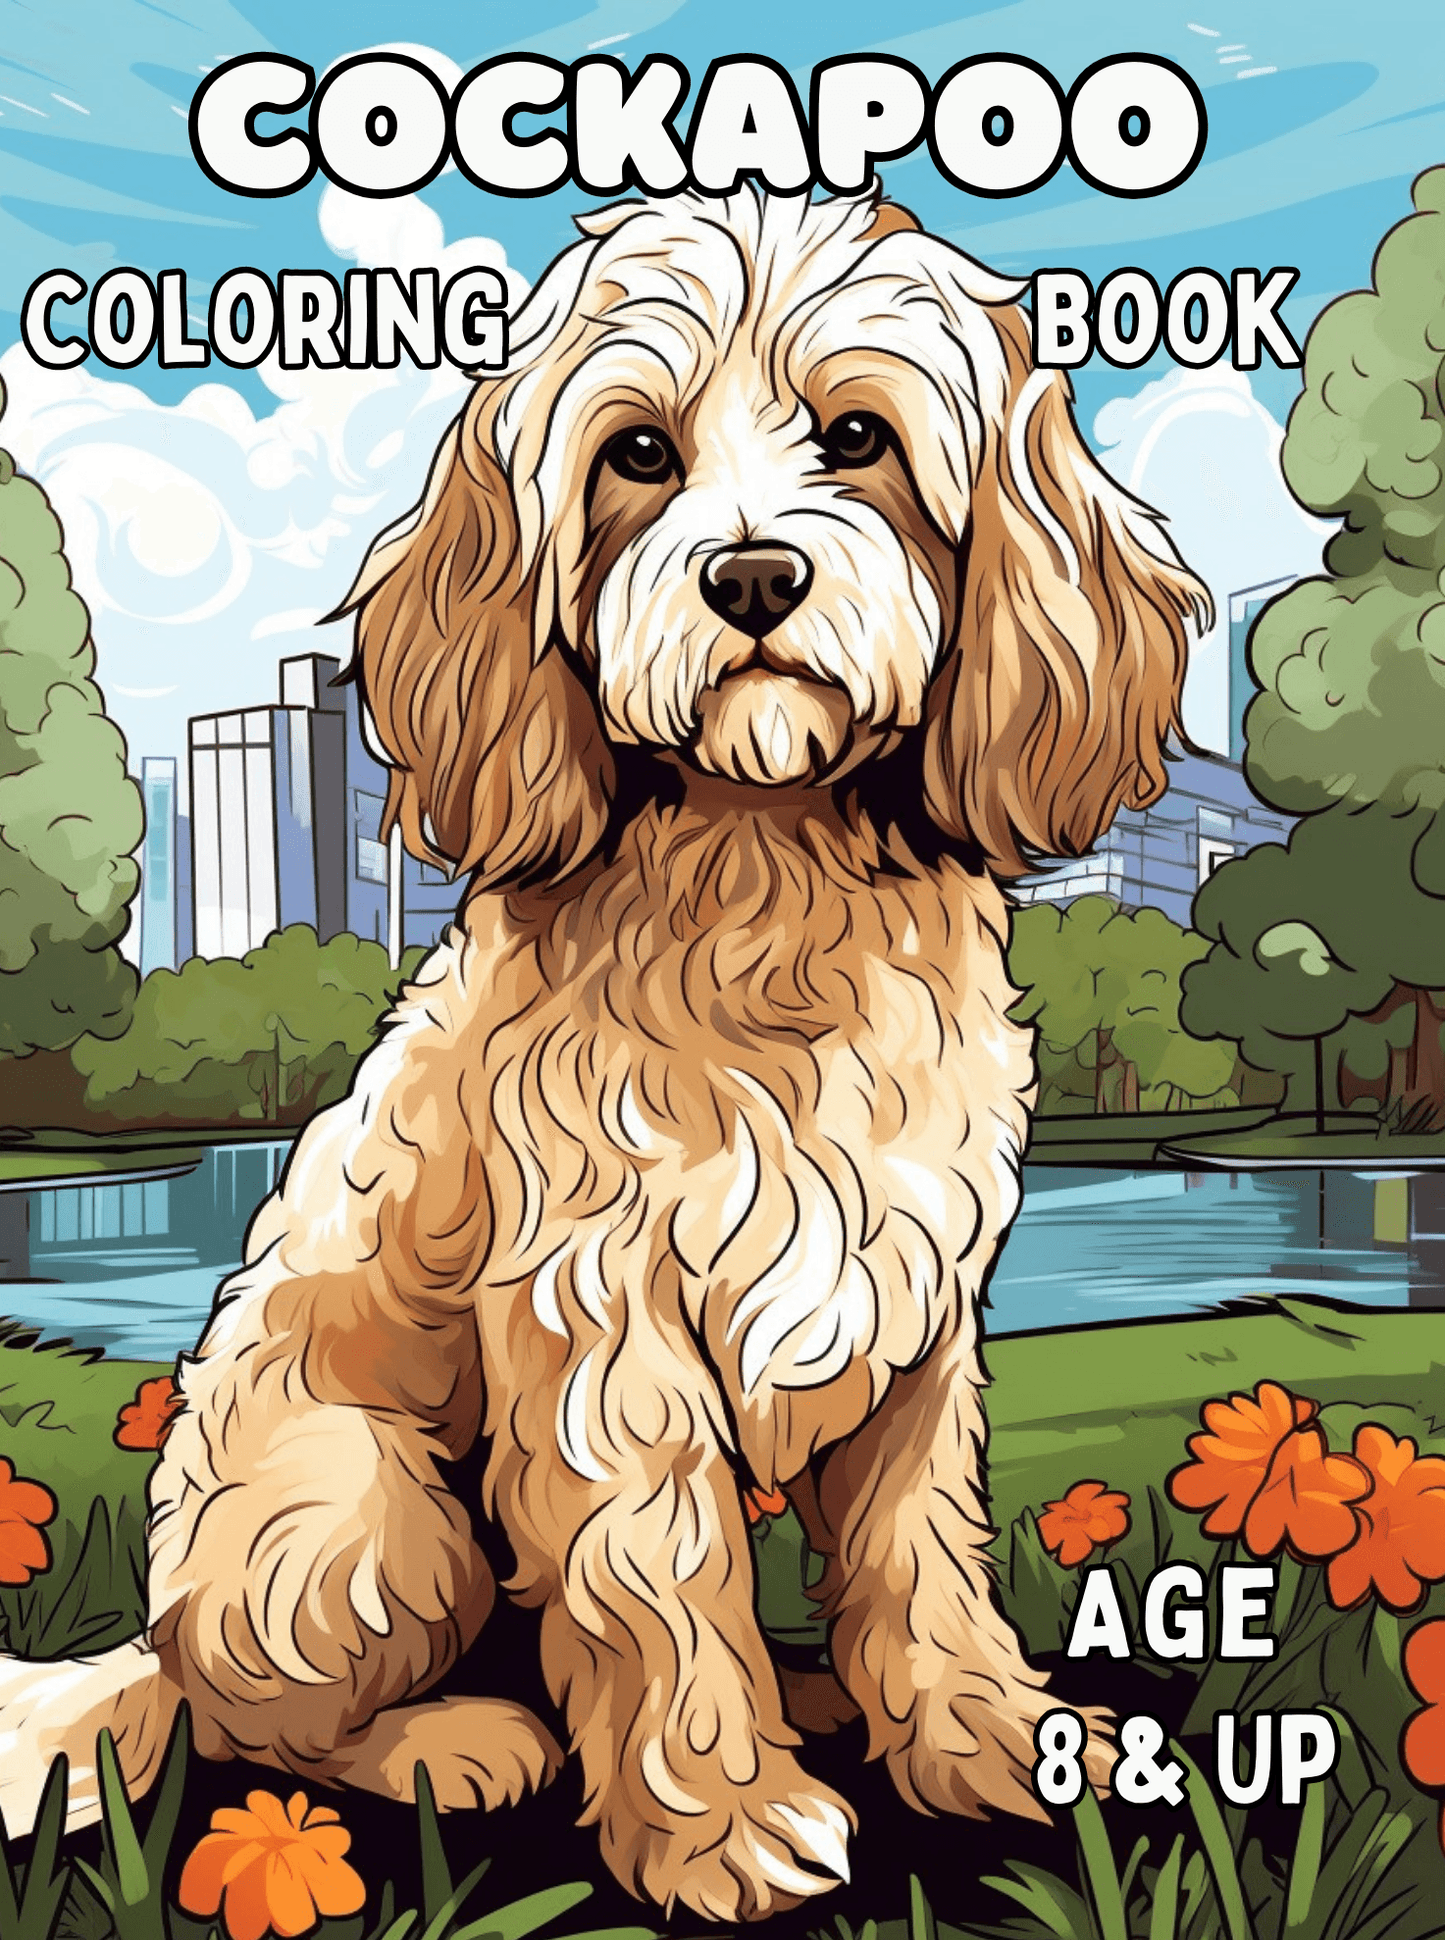 Cockapoo Coloring Book - Orgvelify